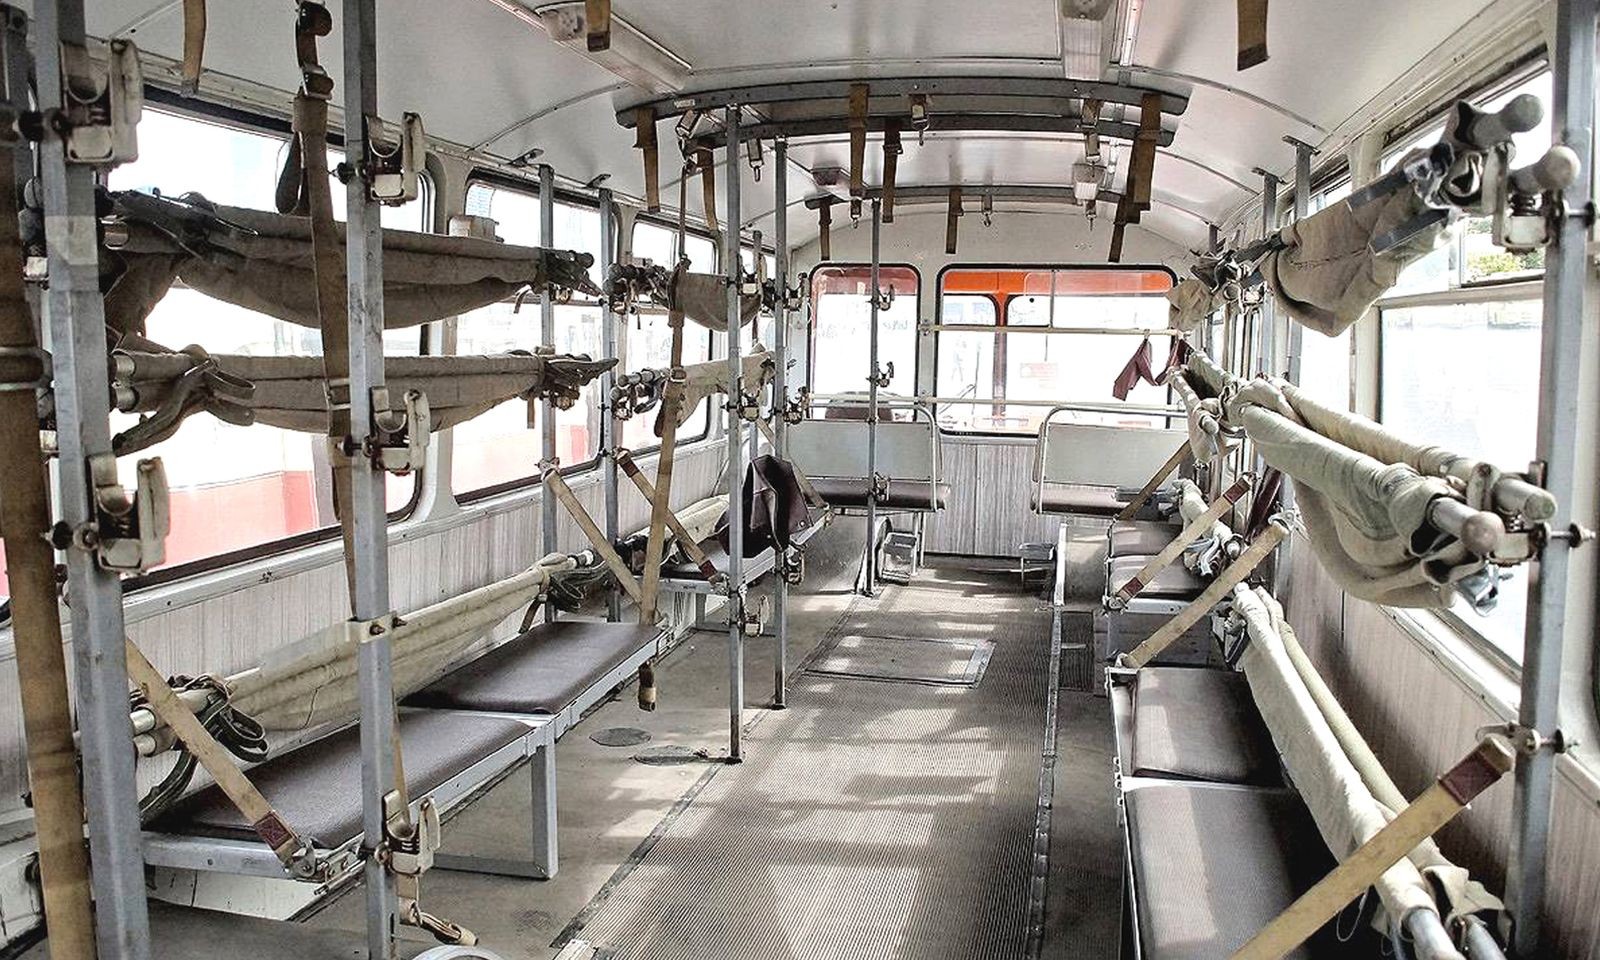 Автобусы, в которых не нужны билеты: редкие пассажирские и санитарные машины армии СССР